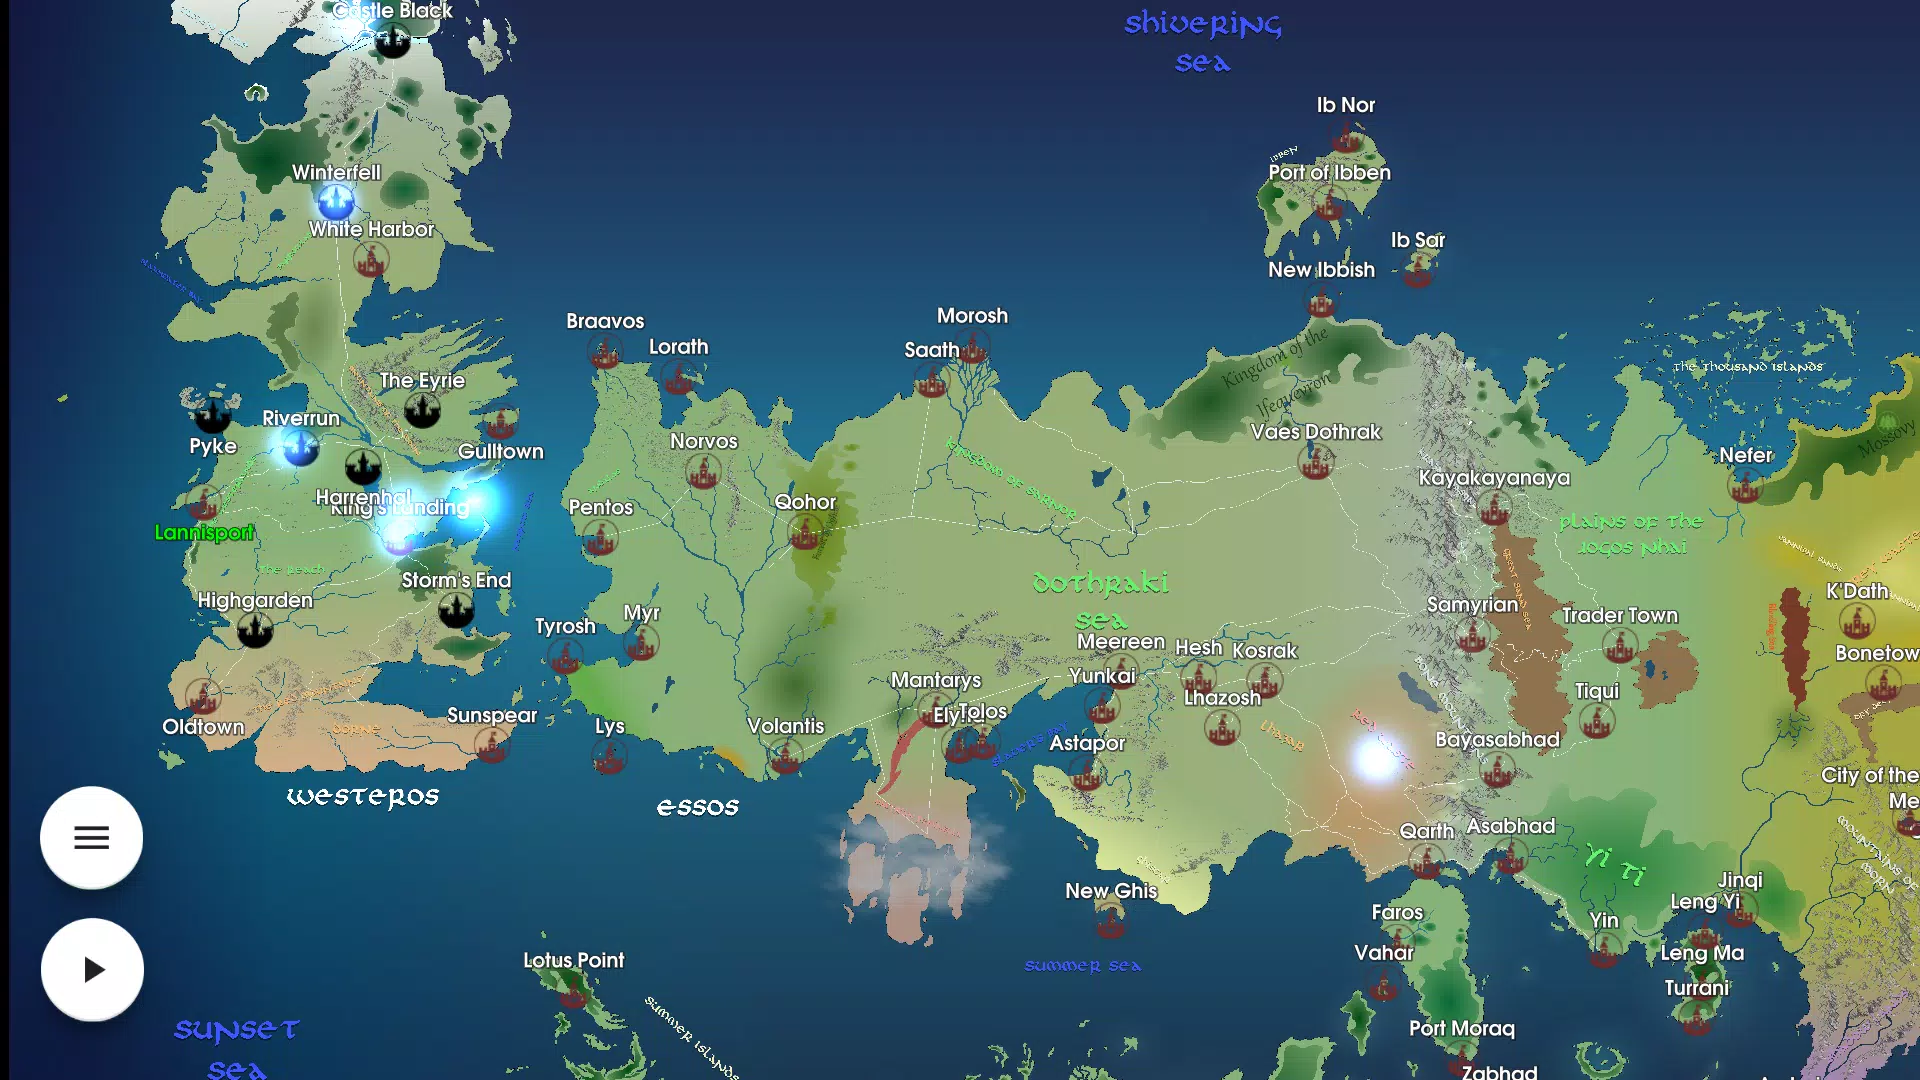 Descarga de APK de Map for Game of Thrones FREE para Android